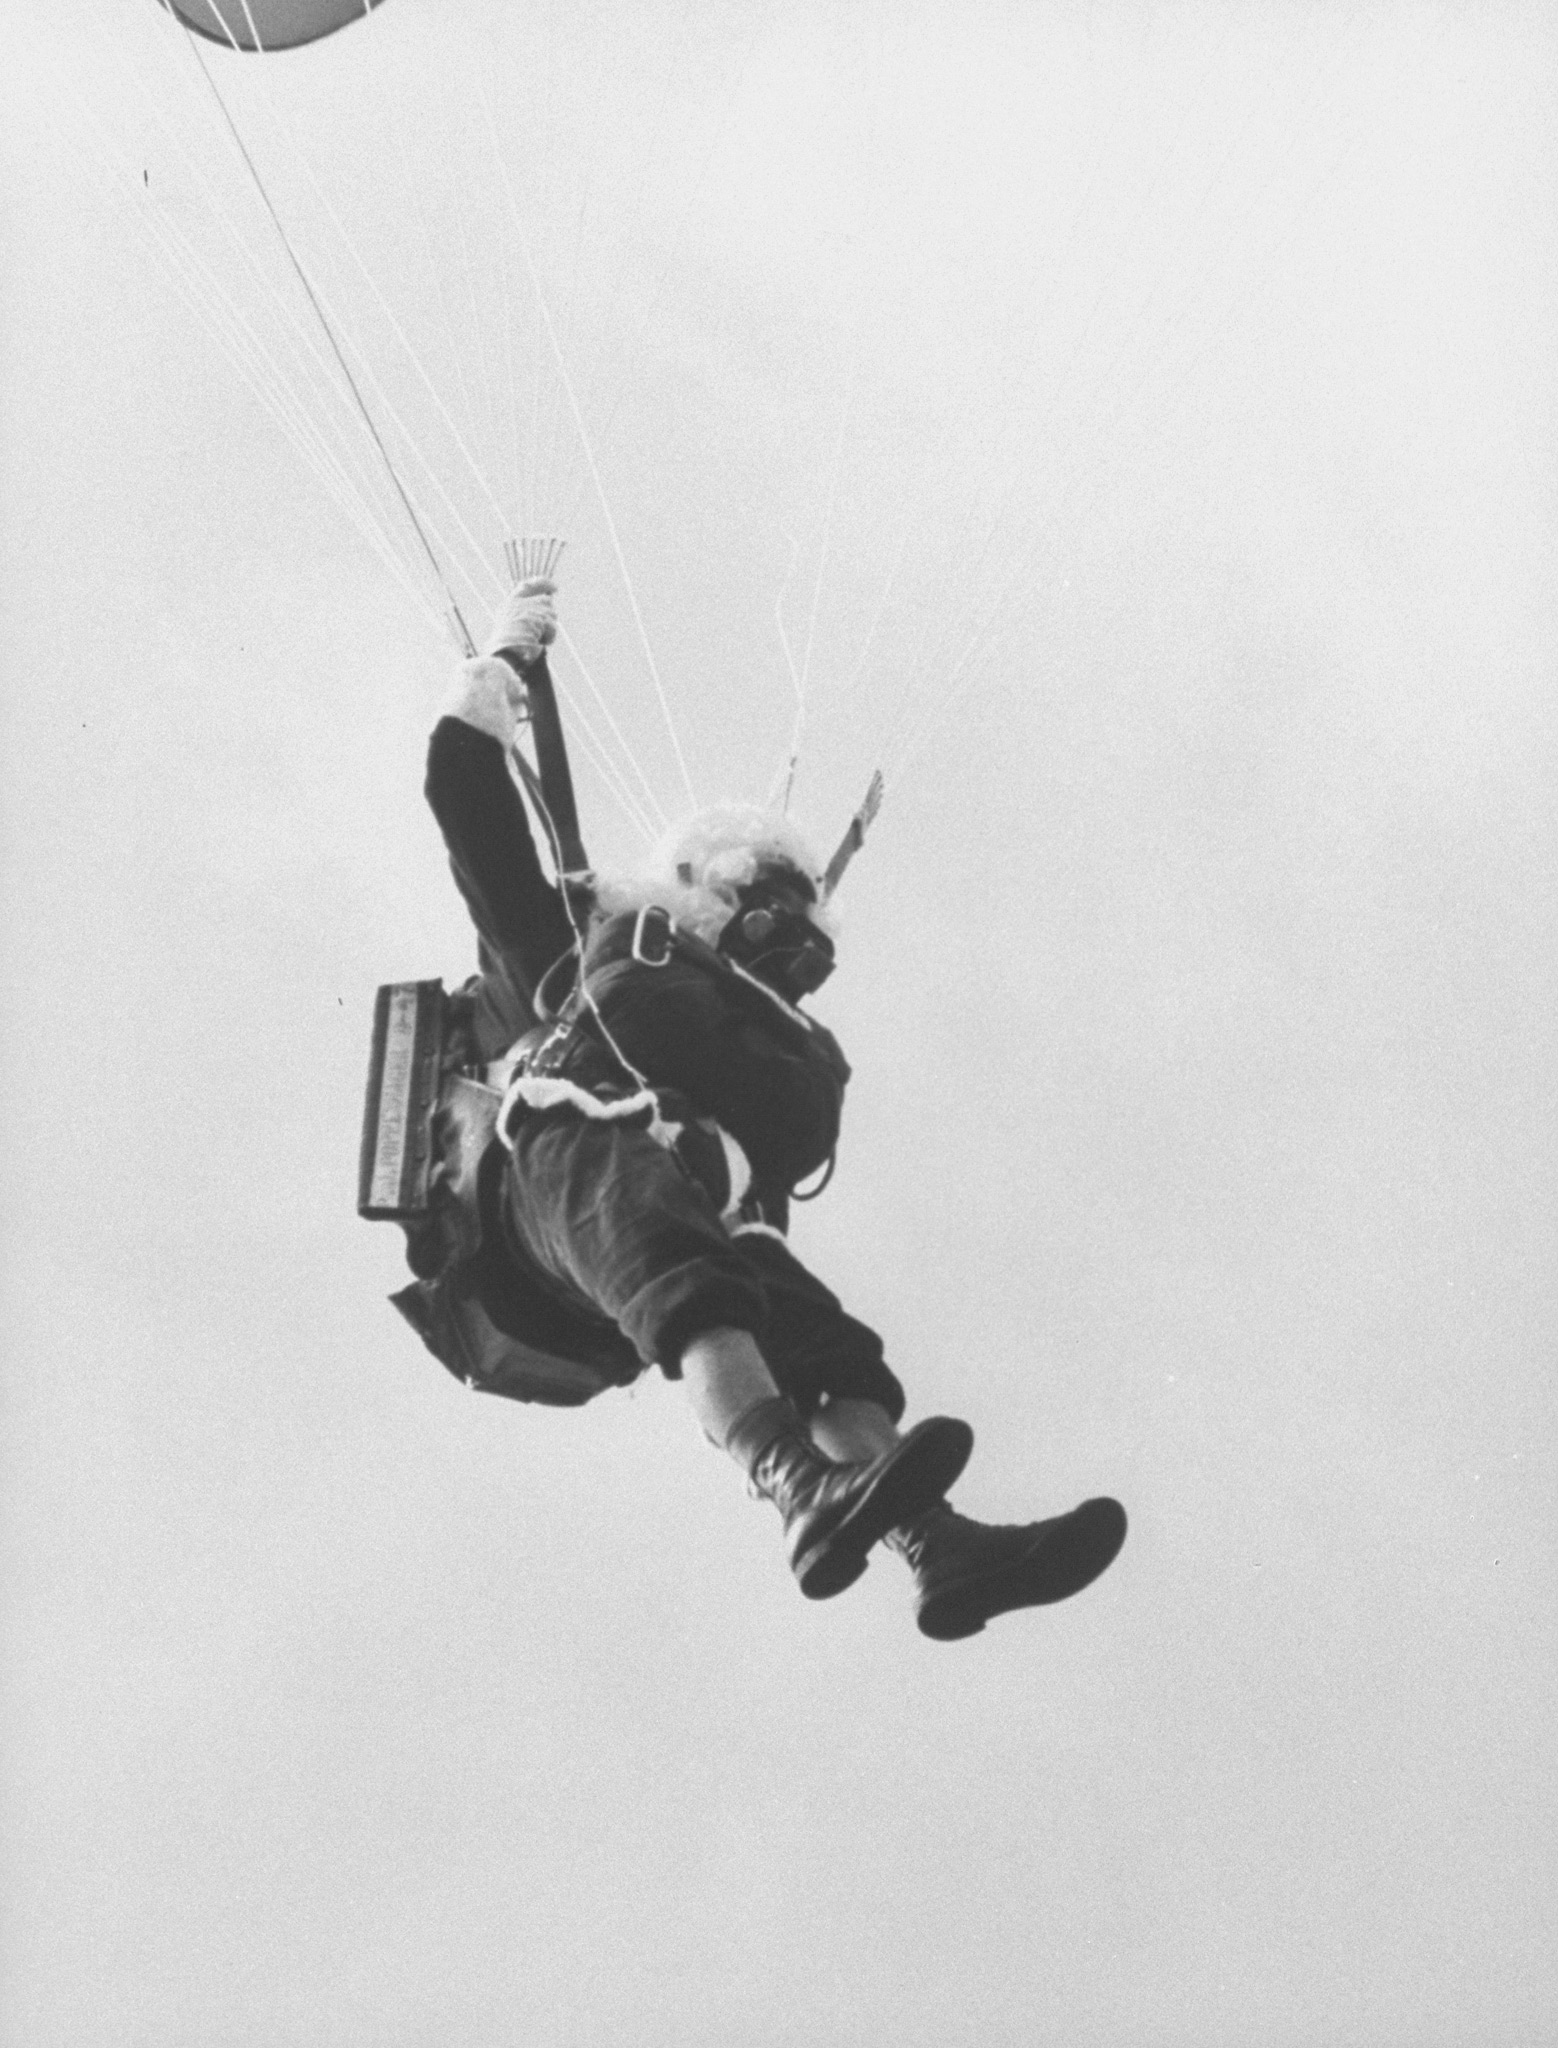 Santa Claus parachuting into Carol City Shopping Center. Florida, 1962.